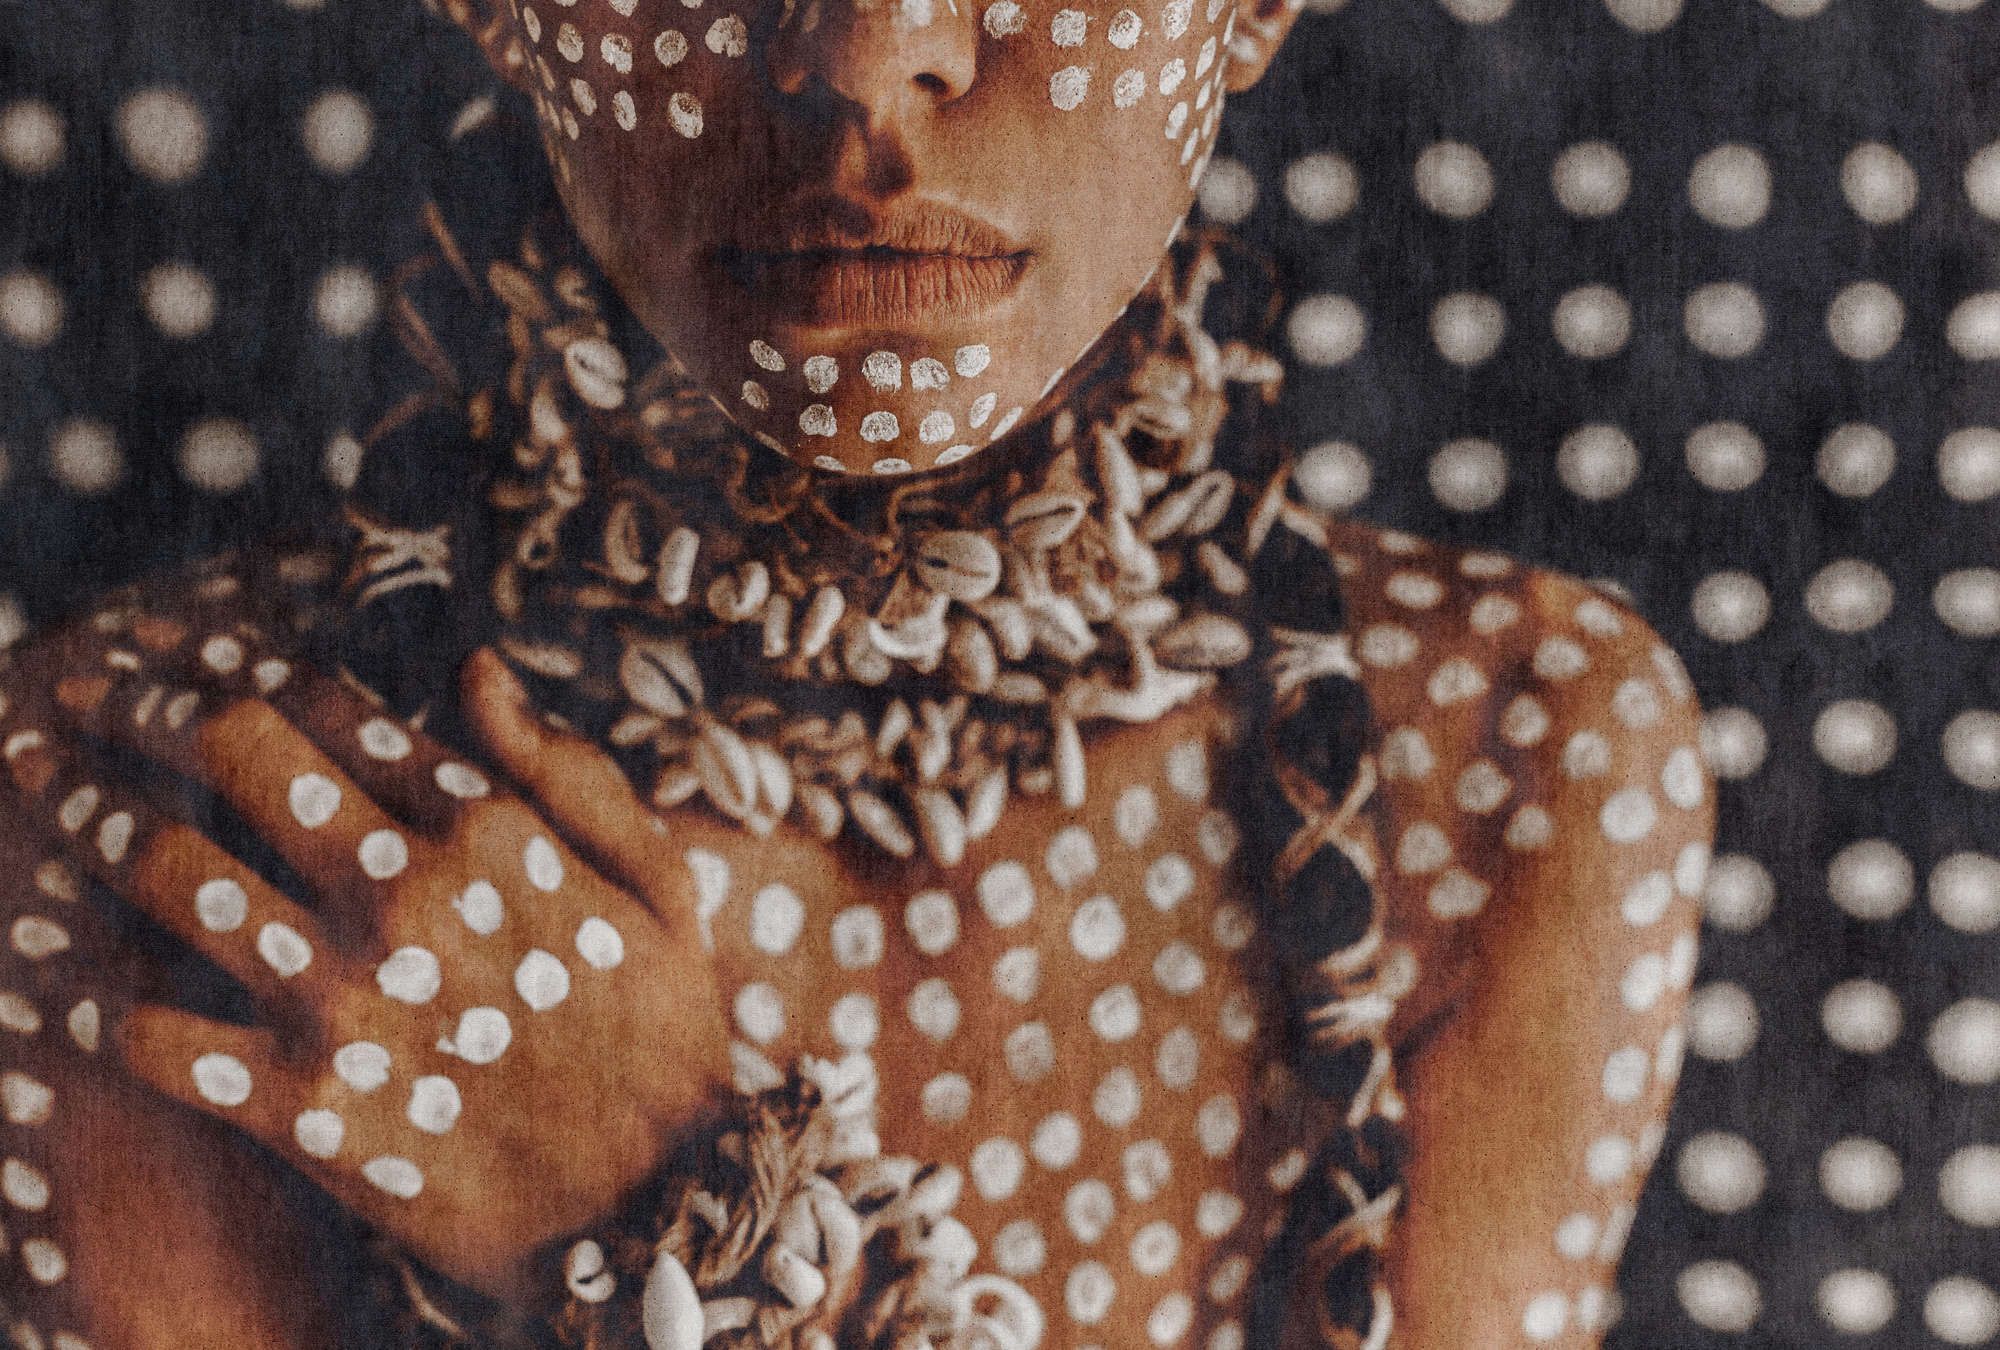             Fotomurali »alani« - Donna africana che dipinge il corpo, struttura ad arazzo sullo sfondo - Materiali non tessuto a trama leggera
        